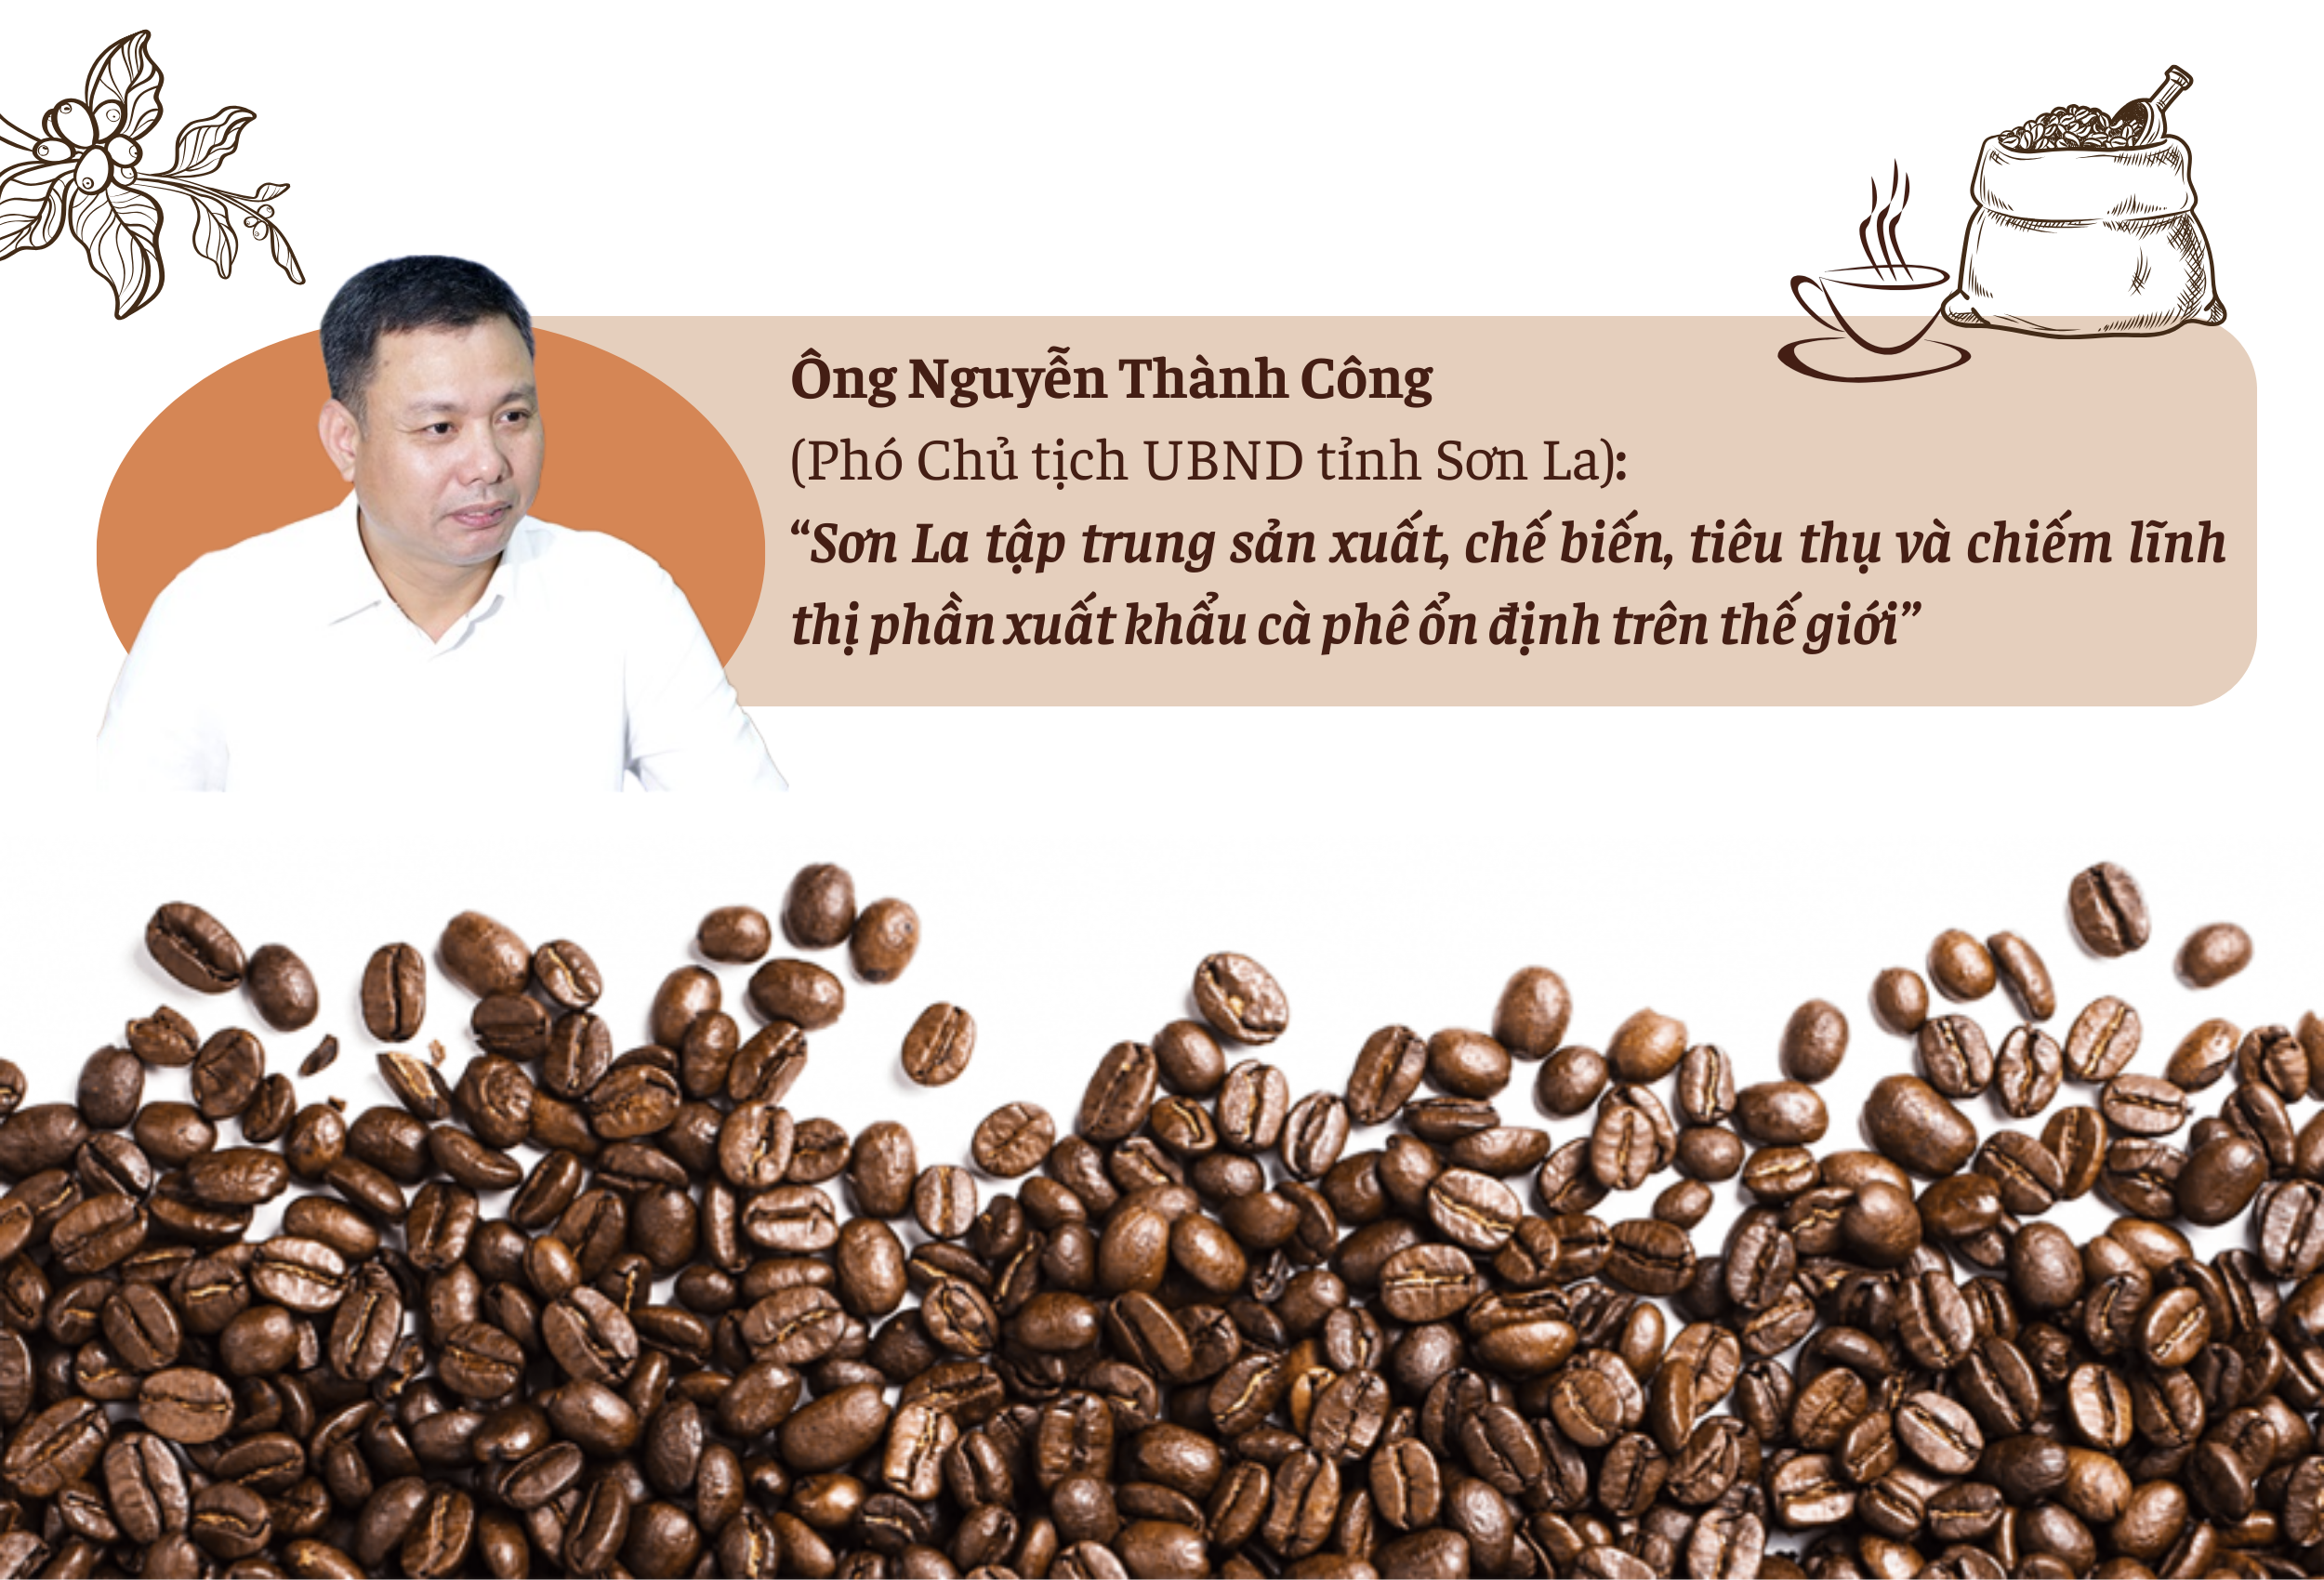 Longform | Cà phê Sơn La: Từ cây giảm nghèo đến thương hiệu vươn tầm thế giới